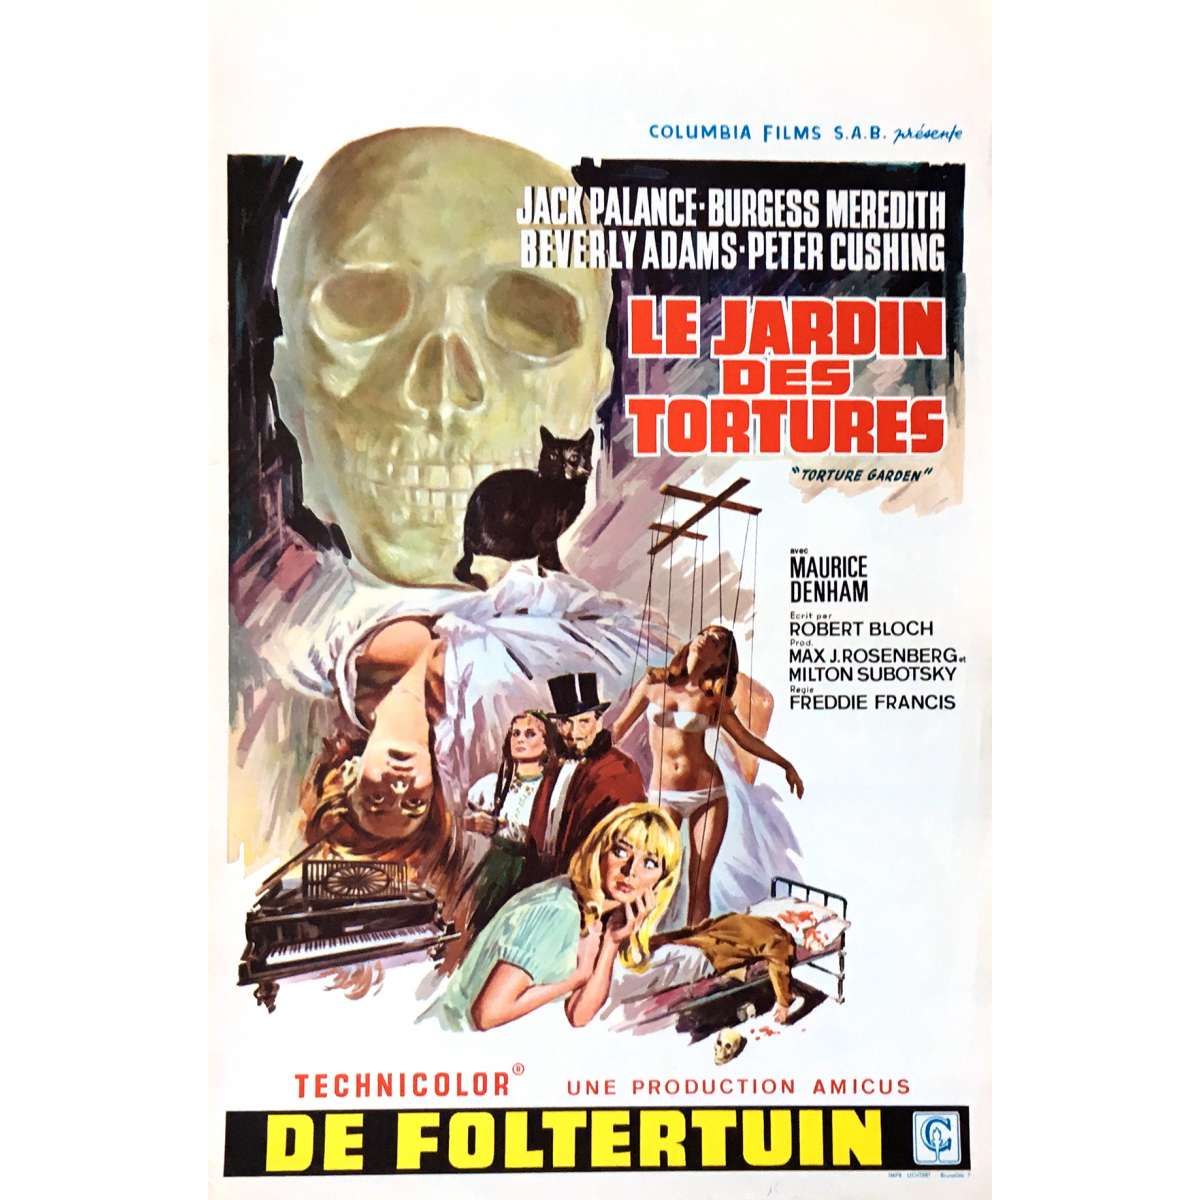 Torture Garden 1967 Movie Poster